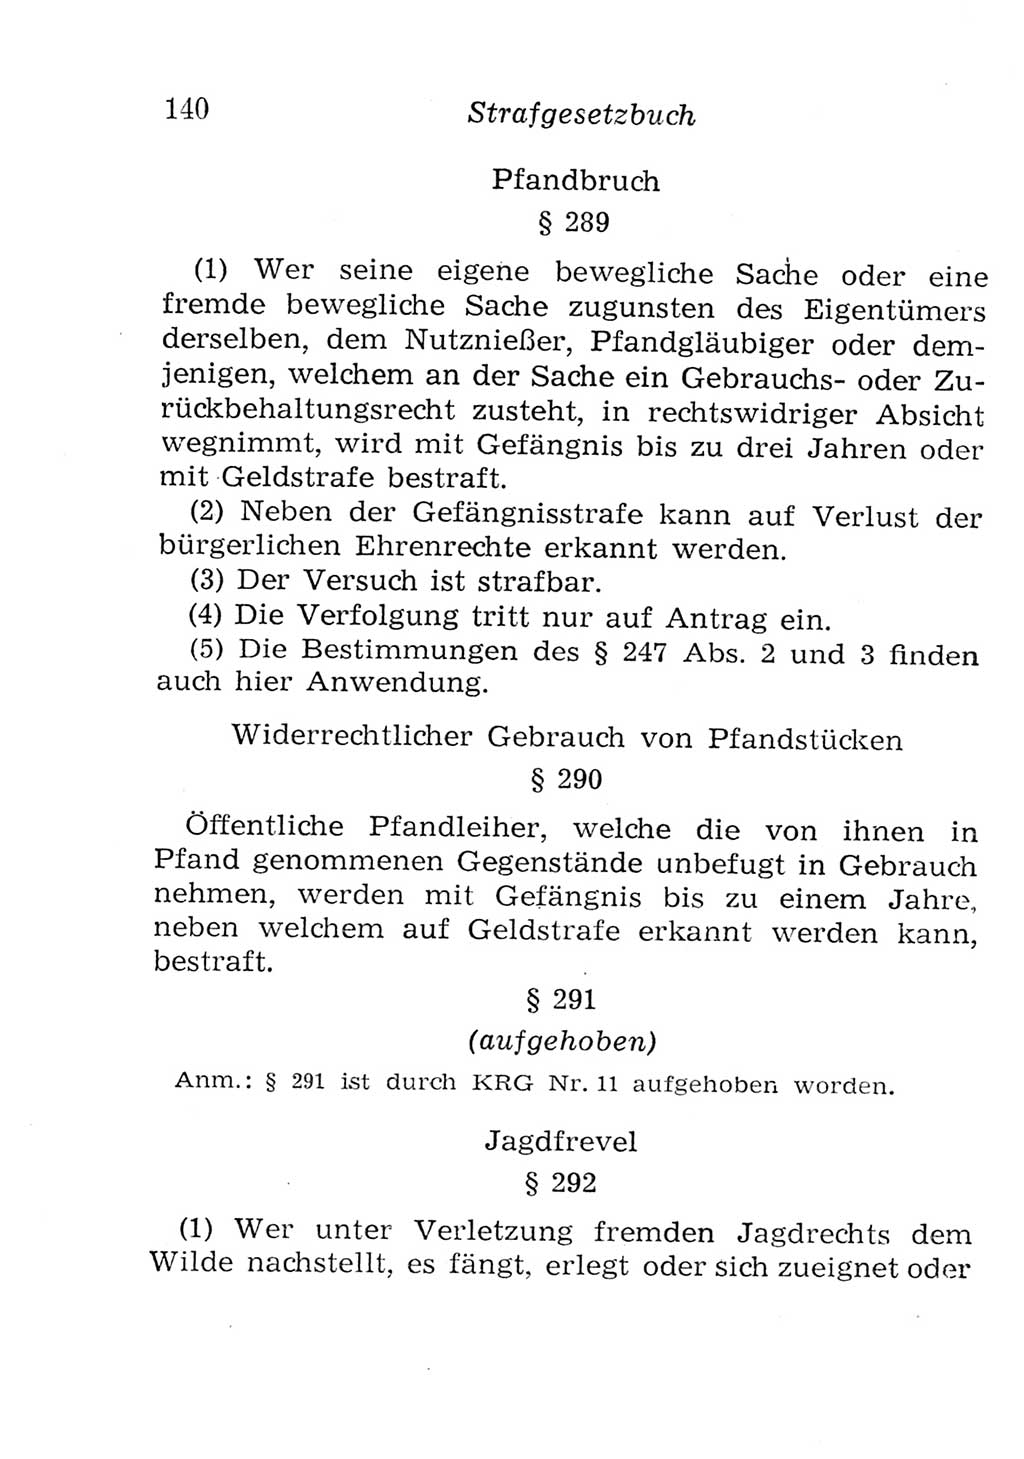 Strafgesetzbuch (StGB) und andere Strafgesetze [Deutsche Demokratische Republik (DDR)] 1957, Seite 140 (StGB Strafges. DDR 1957, S. 140)